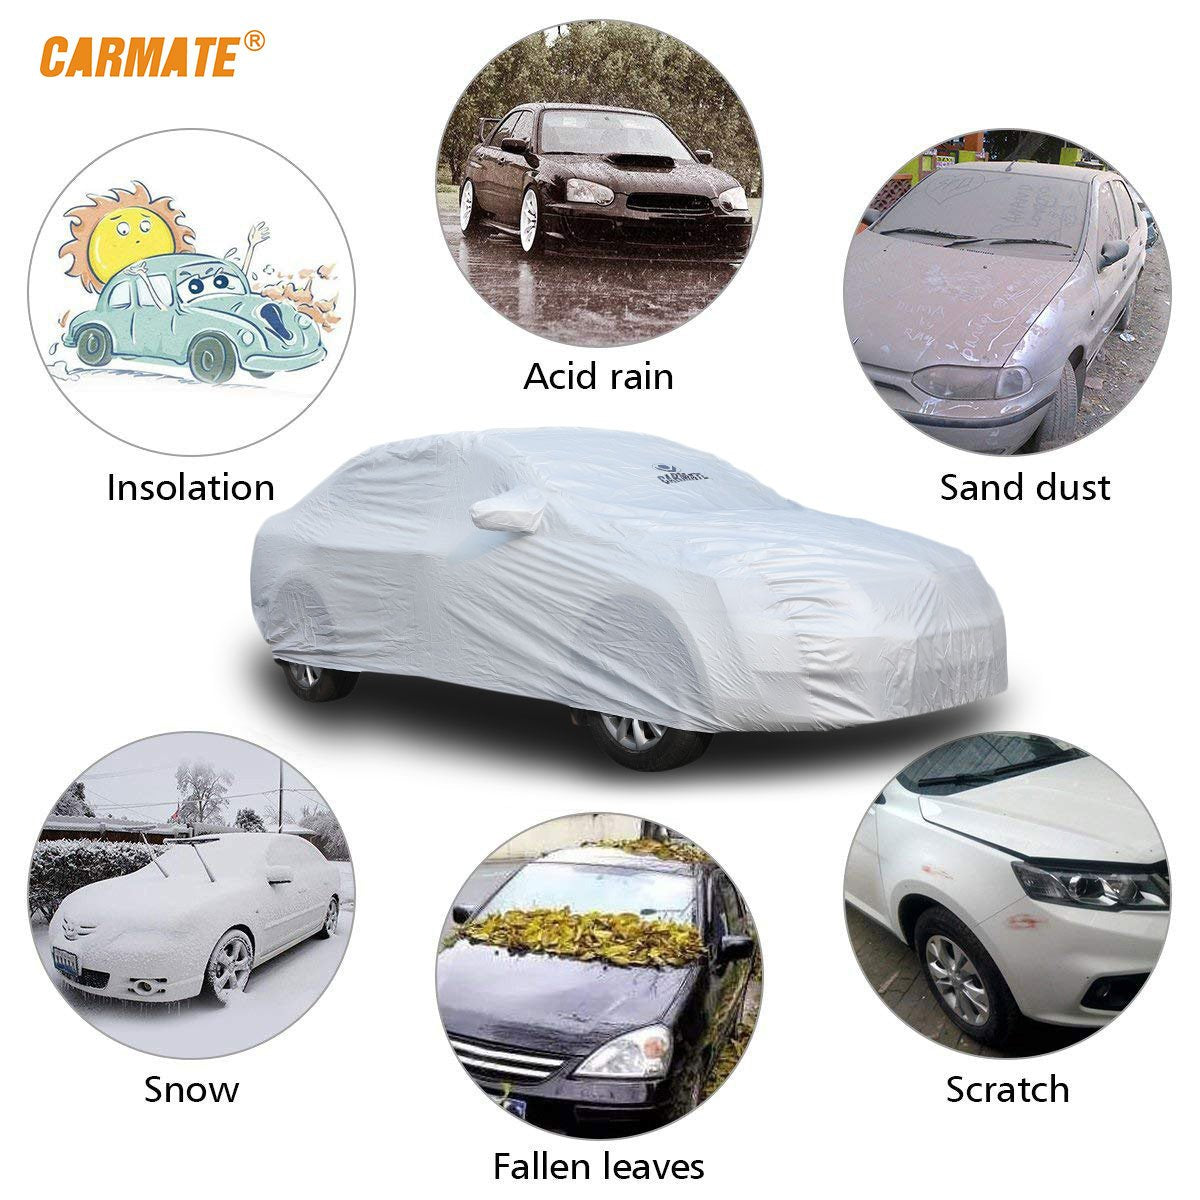 Carmate Premium Car Body Cover Silver Matty (Silver) for  Maruti - Celerio - CARMATE®